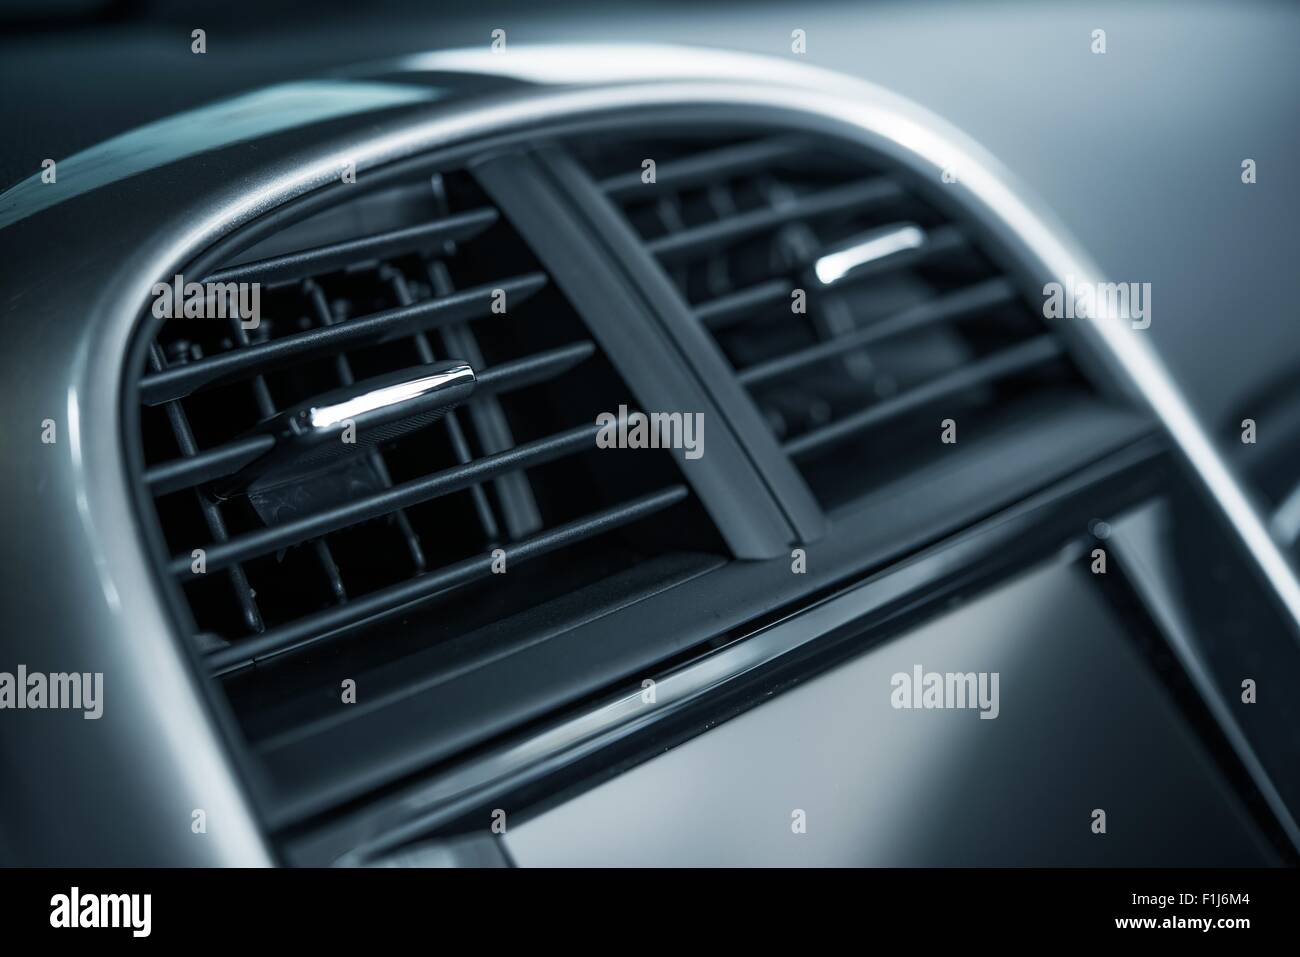 Auto Lufterfrischer ventilation Panel montiert, frische Blumen Duft  Stockfotografie - Alamy